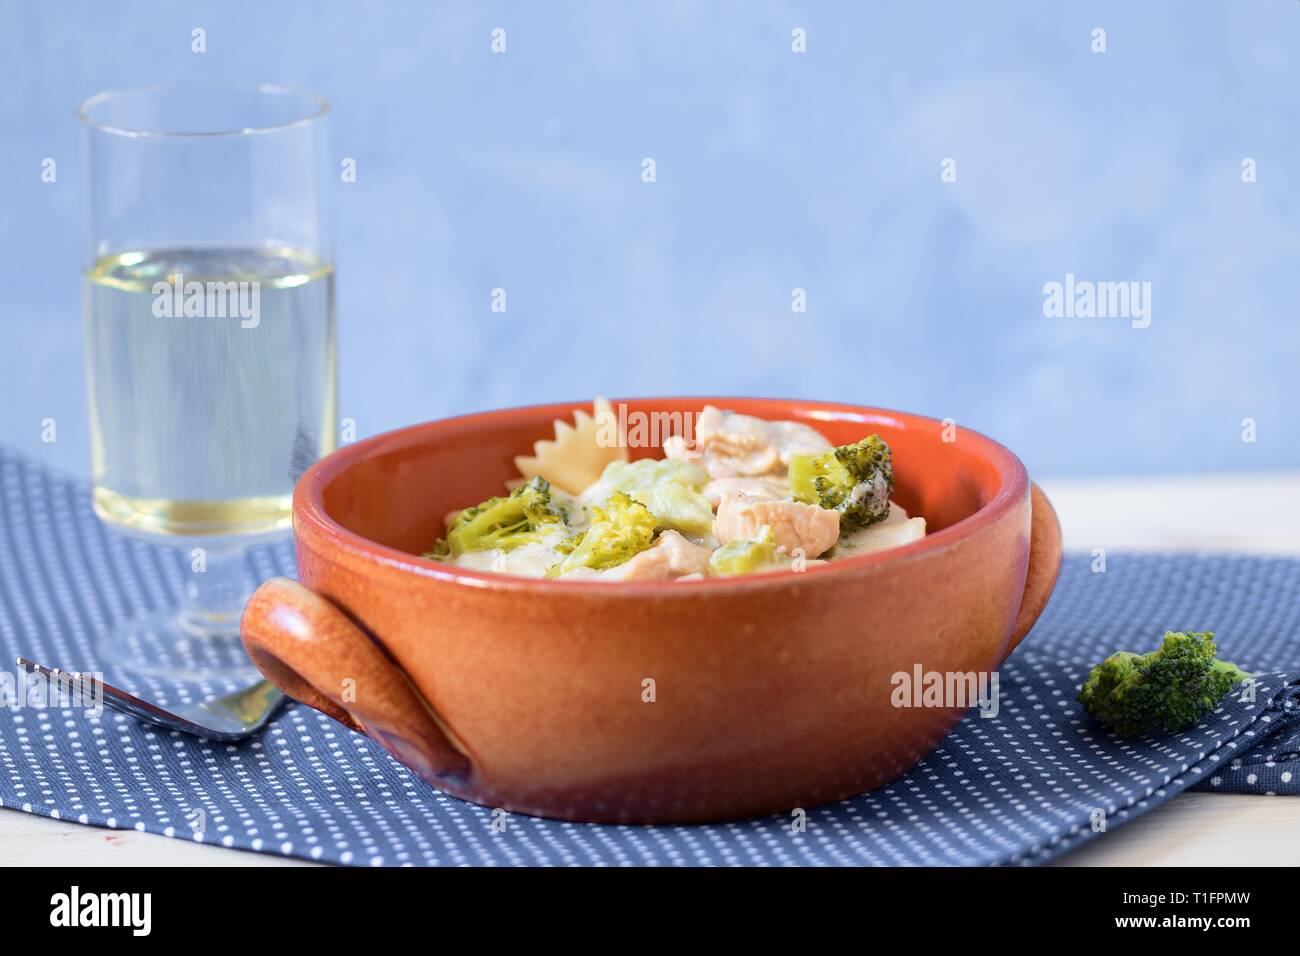 Les pâtes (farfalle) avec le brocoli, la viande de poulet et la crème dans un bol de faïence servi avec du vin blanc à pois sur tapis de table. Déjeuner simple sain Banque D'Images